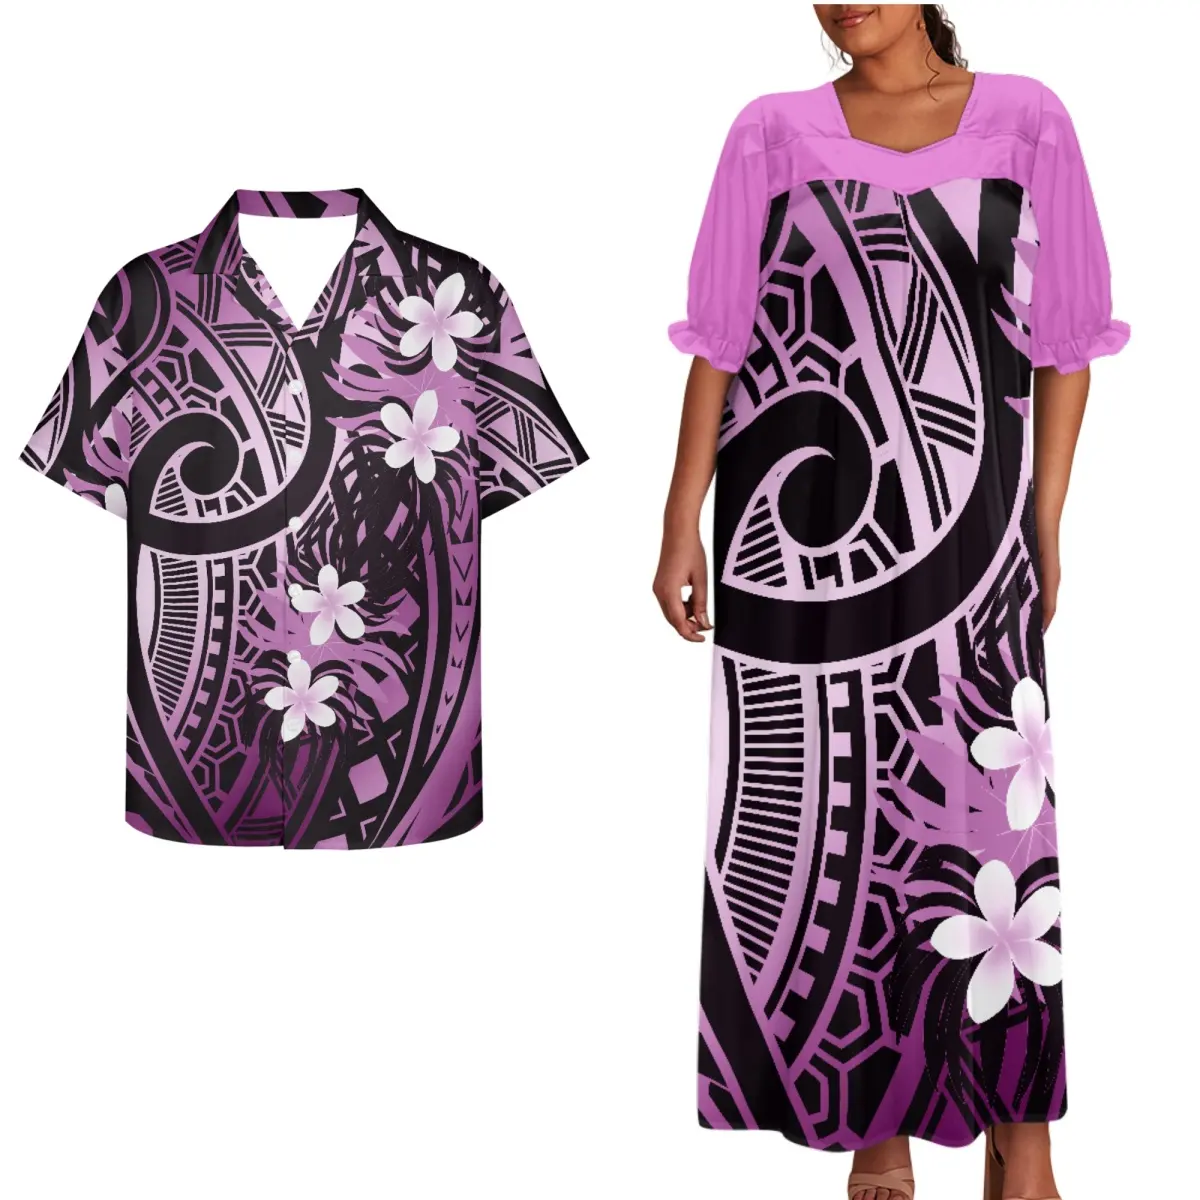 Polinezya çiftler giysi puf kollu elbise artı boyutu kadınlar kısa kollu elbise maç erkek gömleği baskı